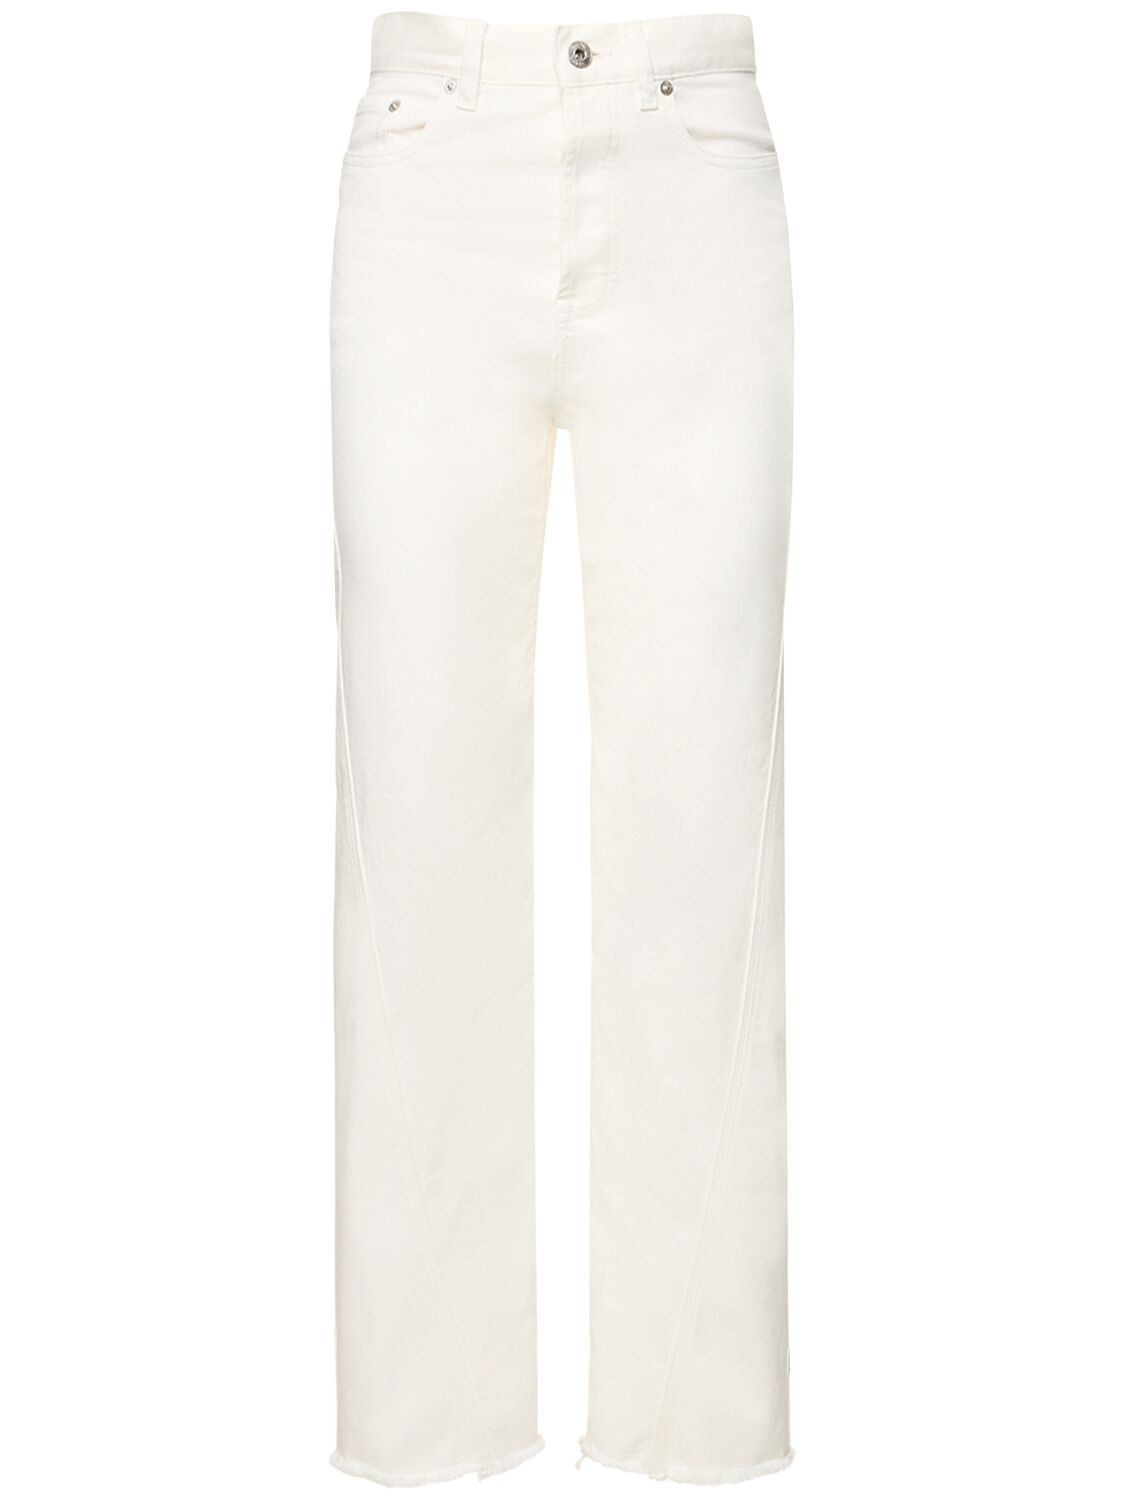 Mujer Jeans Rectos De Denim Con Cintura Alta Blanco Óptico 38 - LANVIN - Modalova